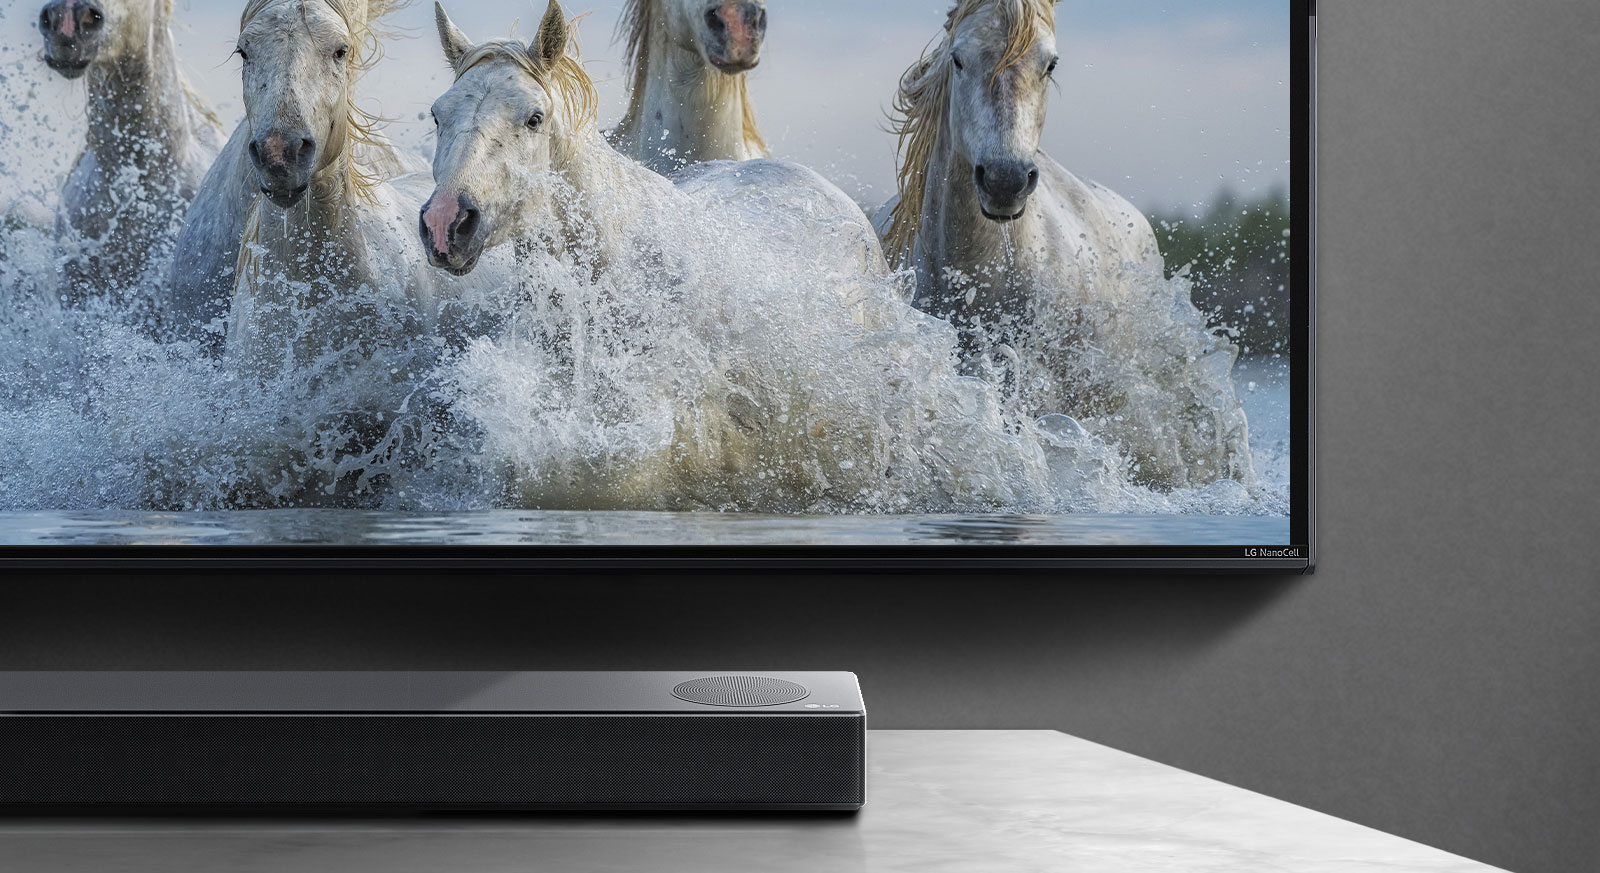 Jumatate din partea de jos a ecranului si jumatate din bara de sunet. Pe televizor sunt prezentati cai albi care alearga deasupra apei. 